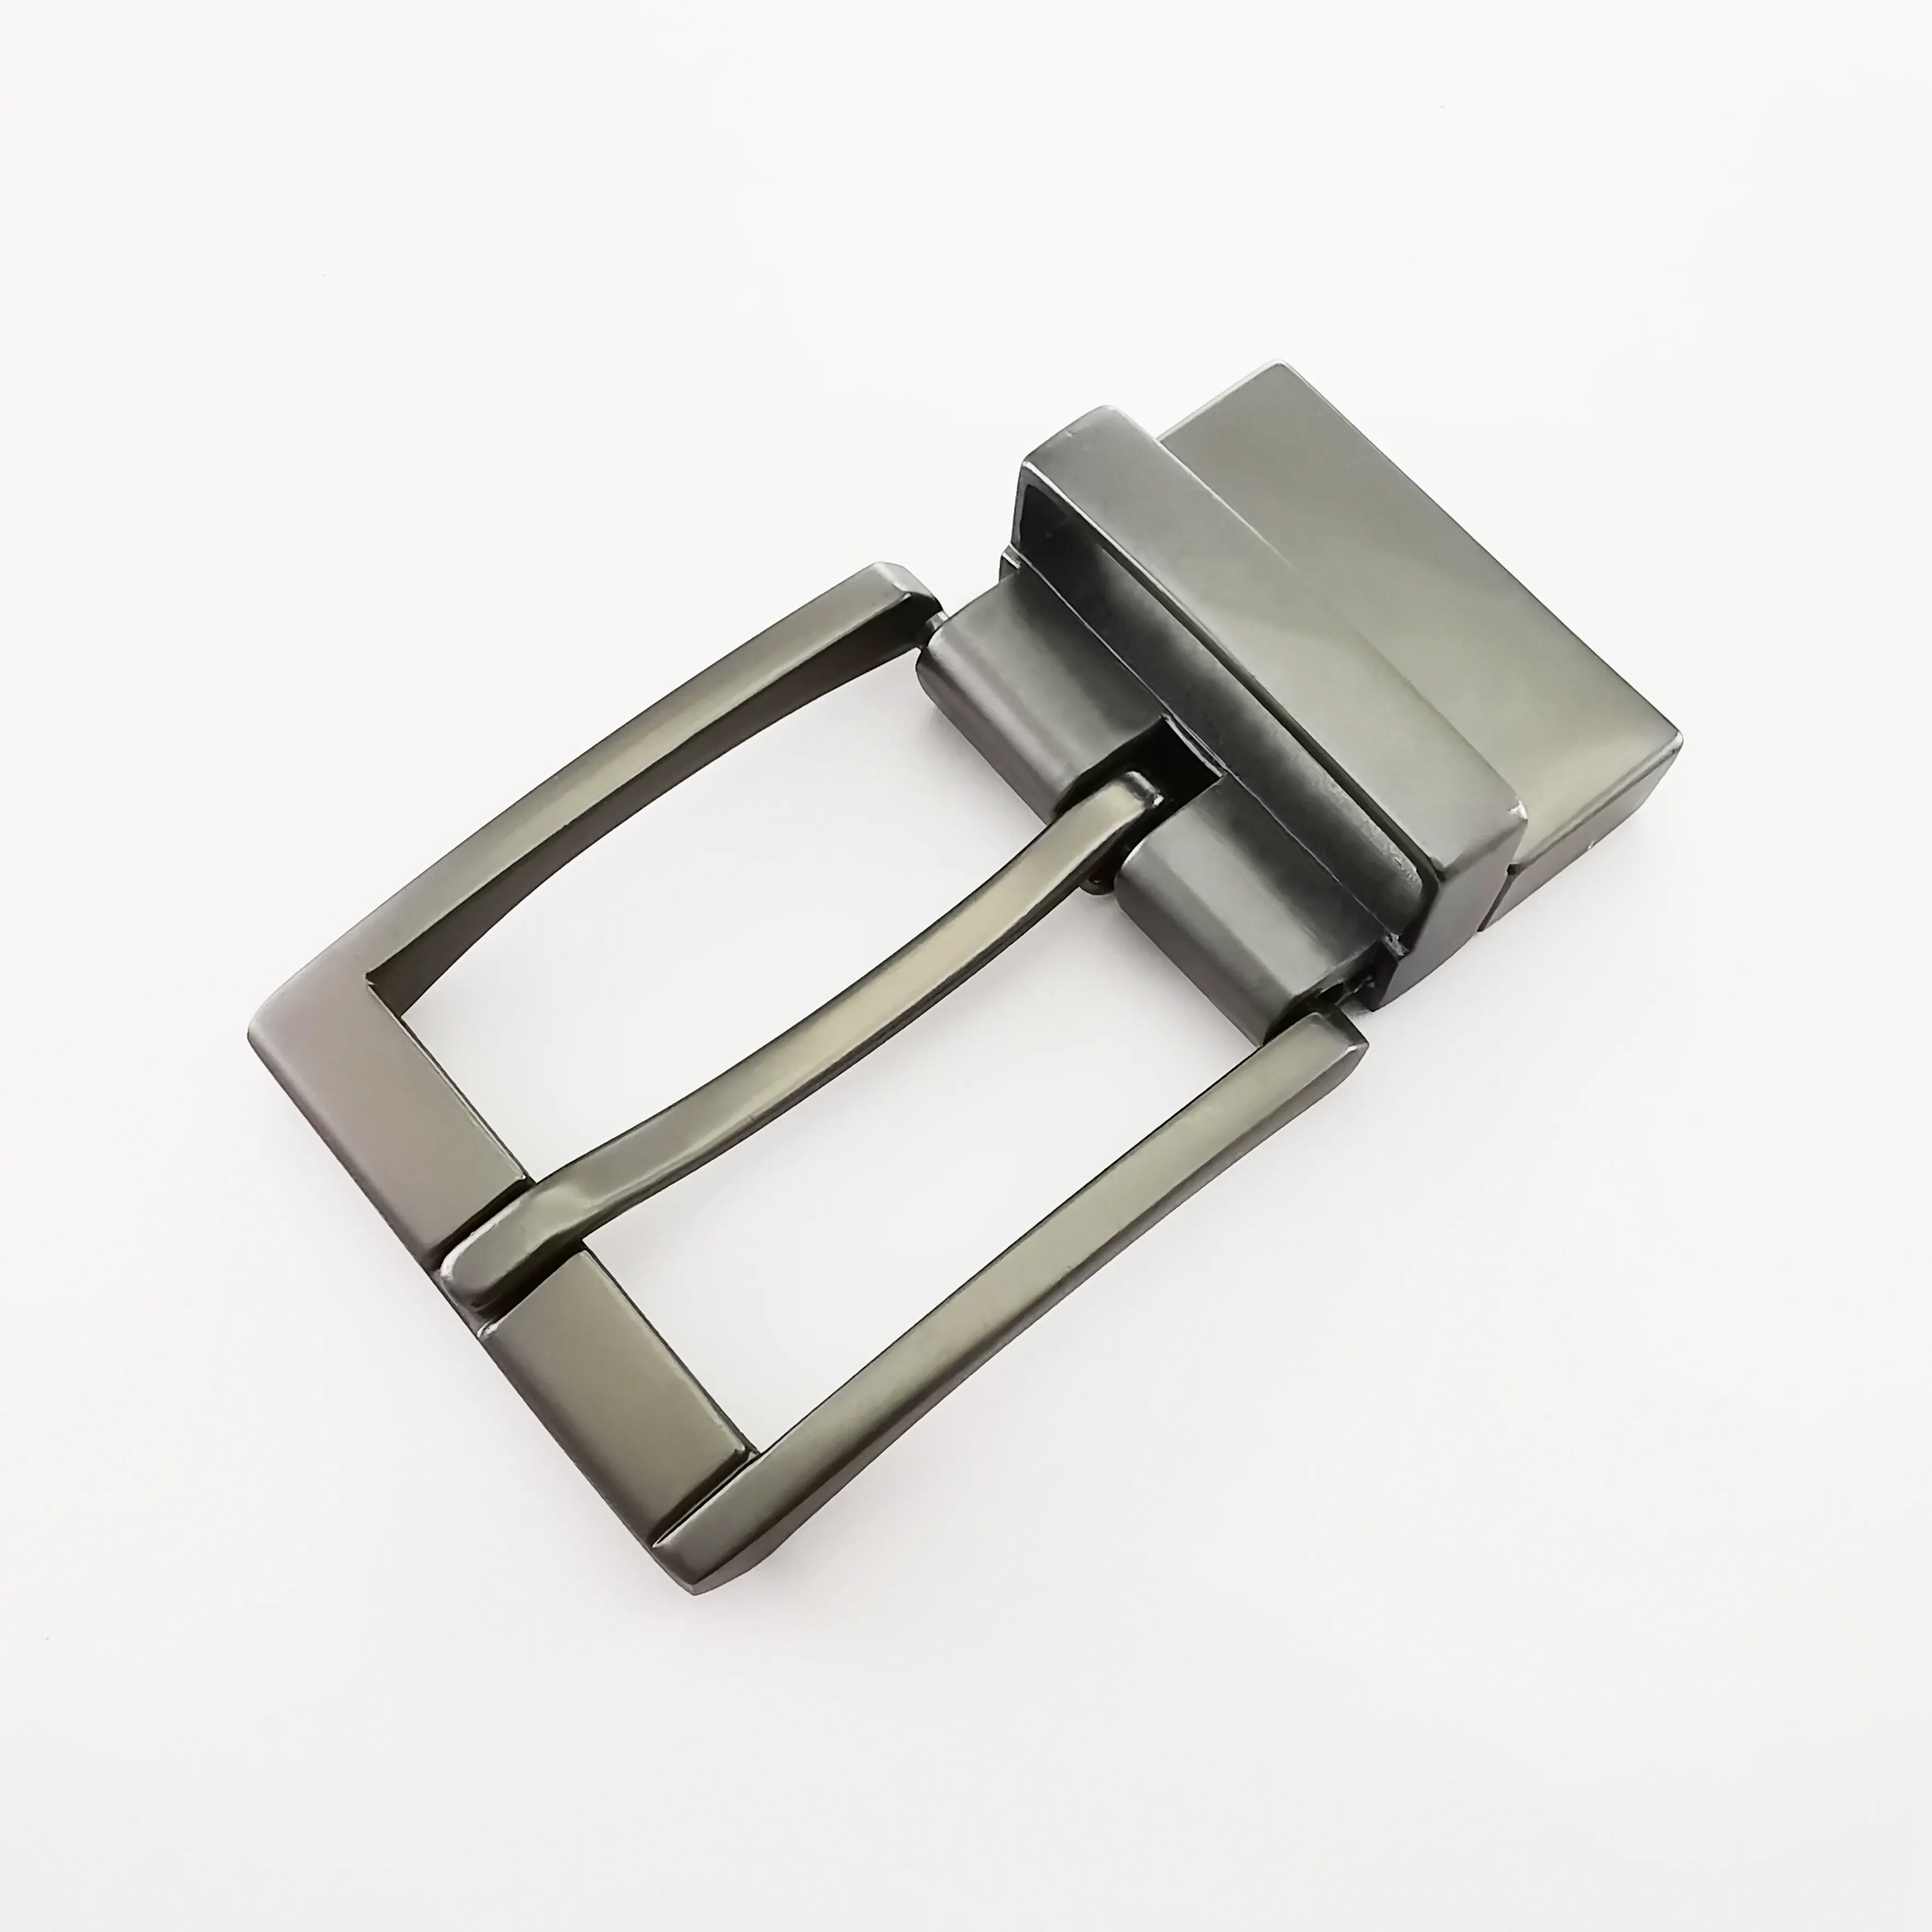 Bunte Neue Trendy Drehbare Zink Metall Benutzerdefinierte Gürtel Schnalle Teile